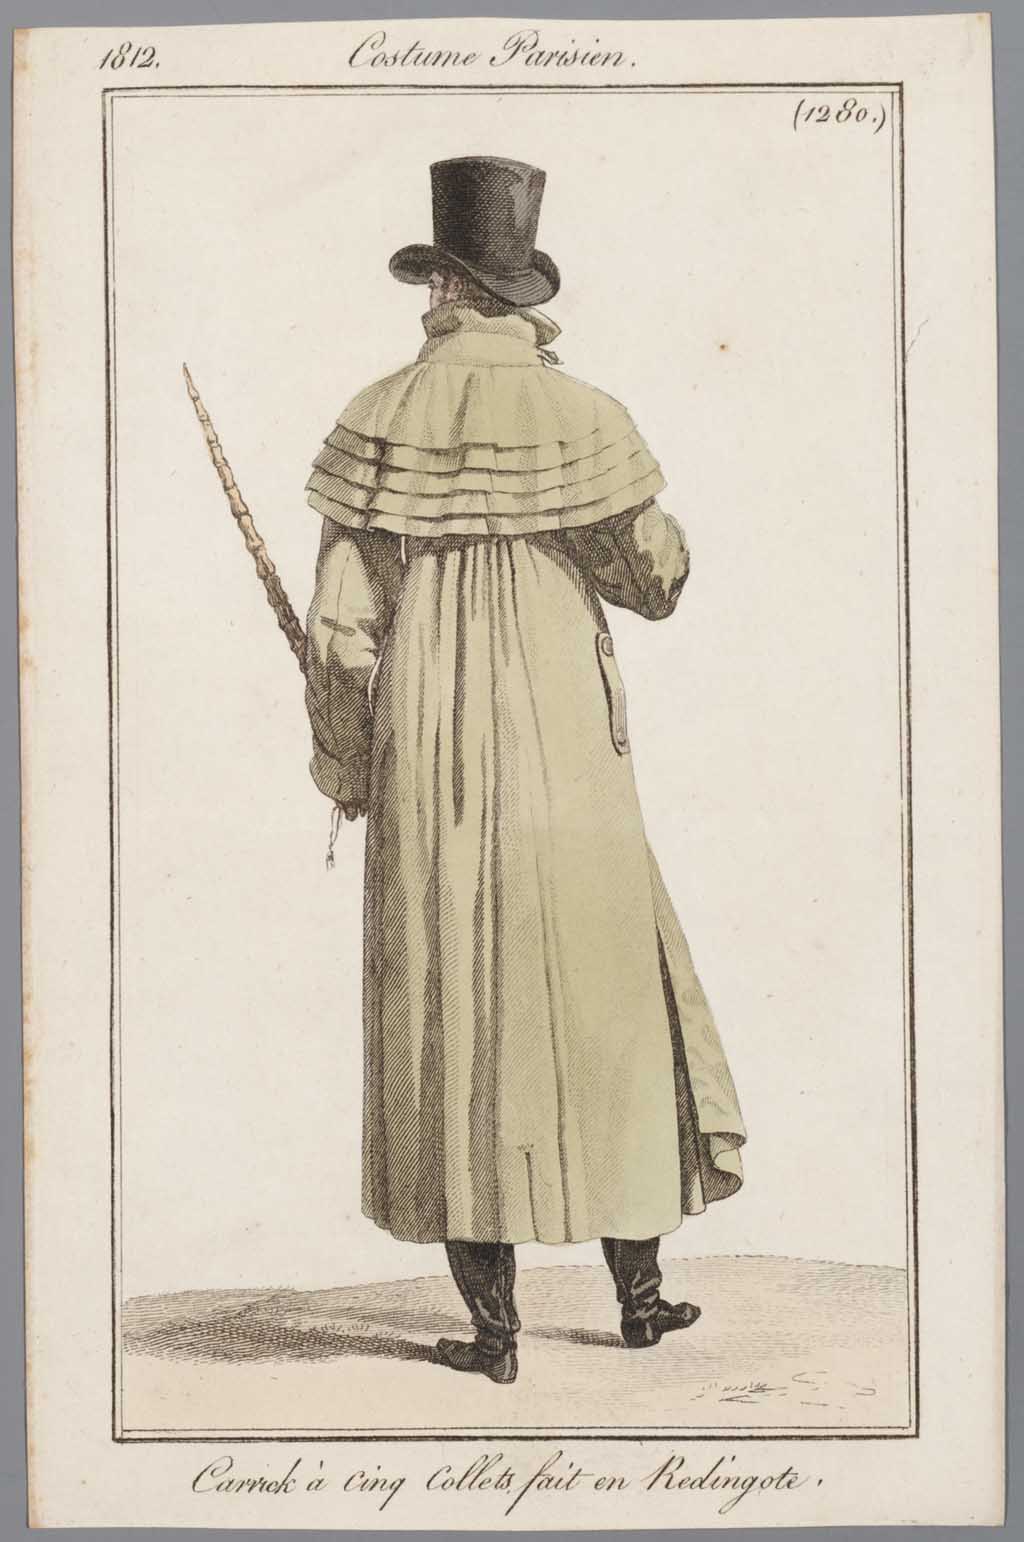 Costume Parisien, no. 1280: Carrick à cinq Collets fait en Redingote